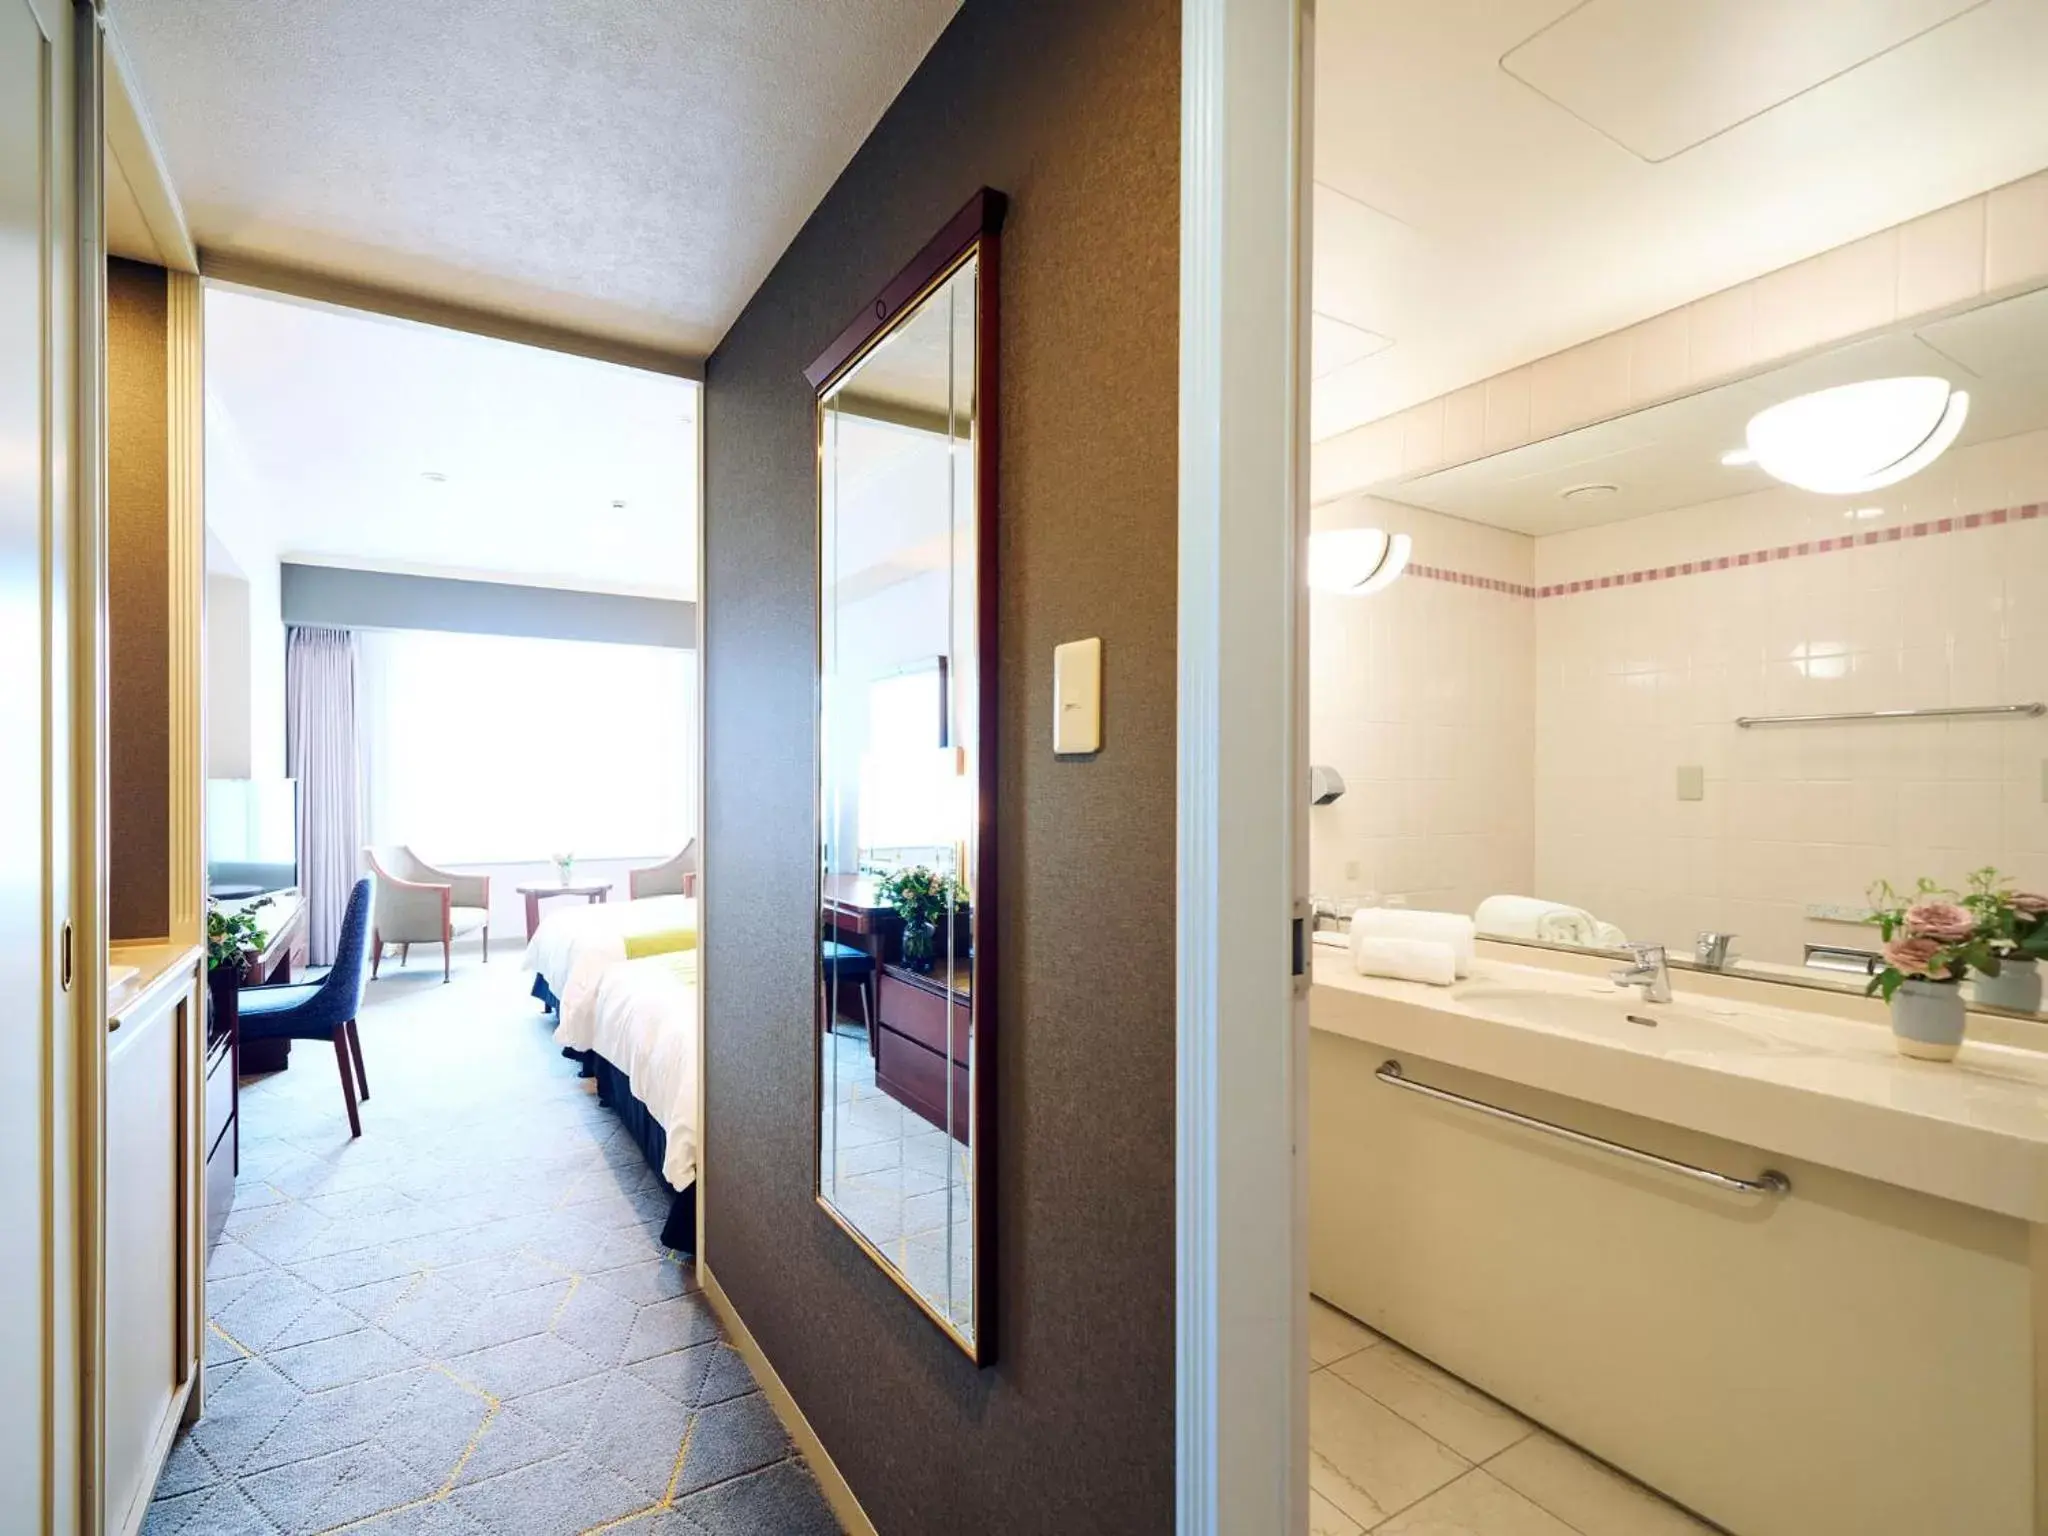 Photo of the whole room, Bathroom in Rihga Royal Hotel Kokura Fukuoka